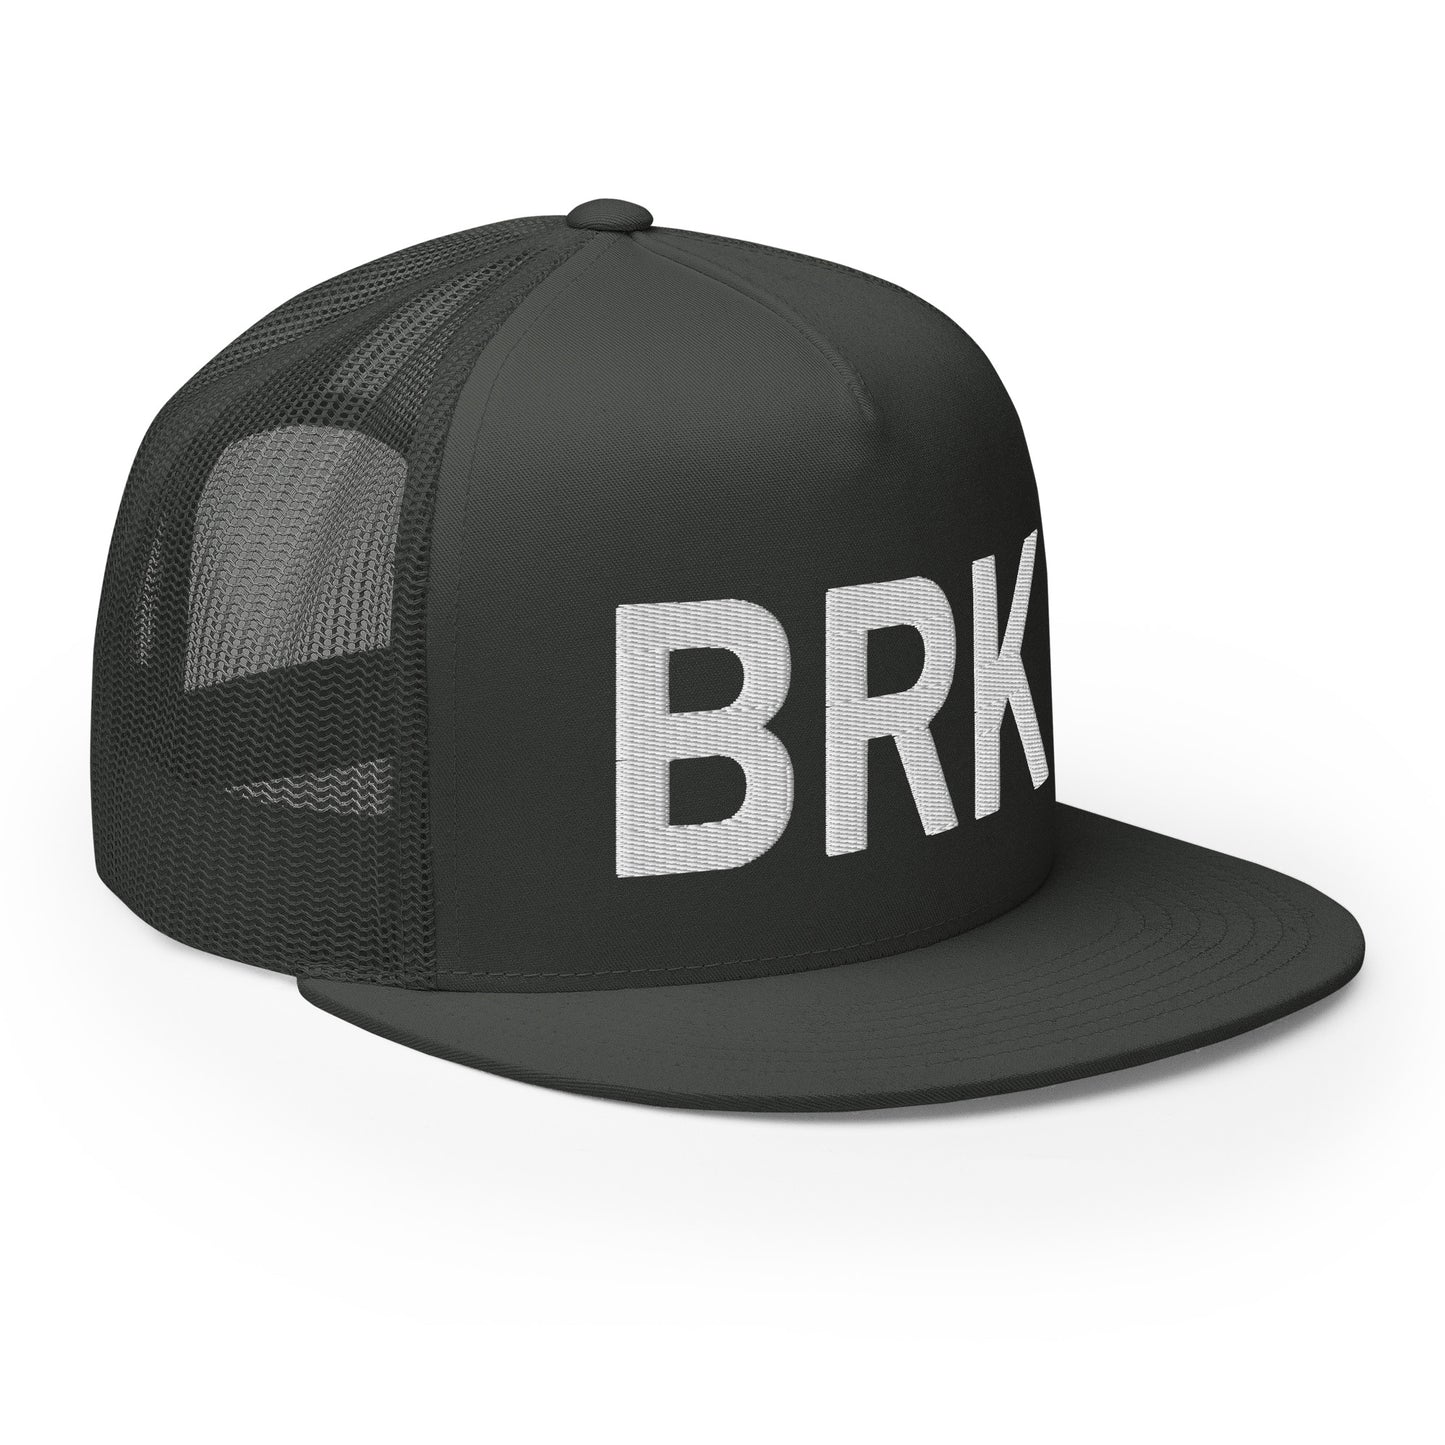 BRK Trucker Hat